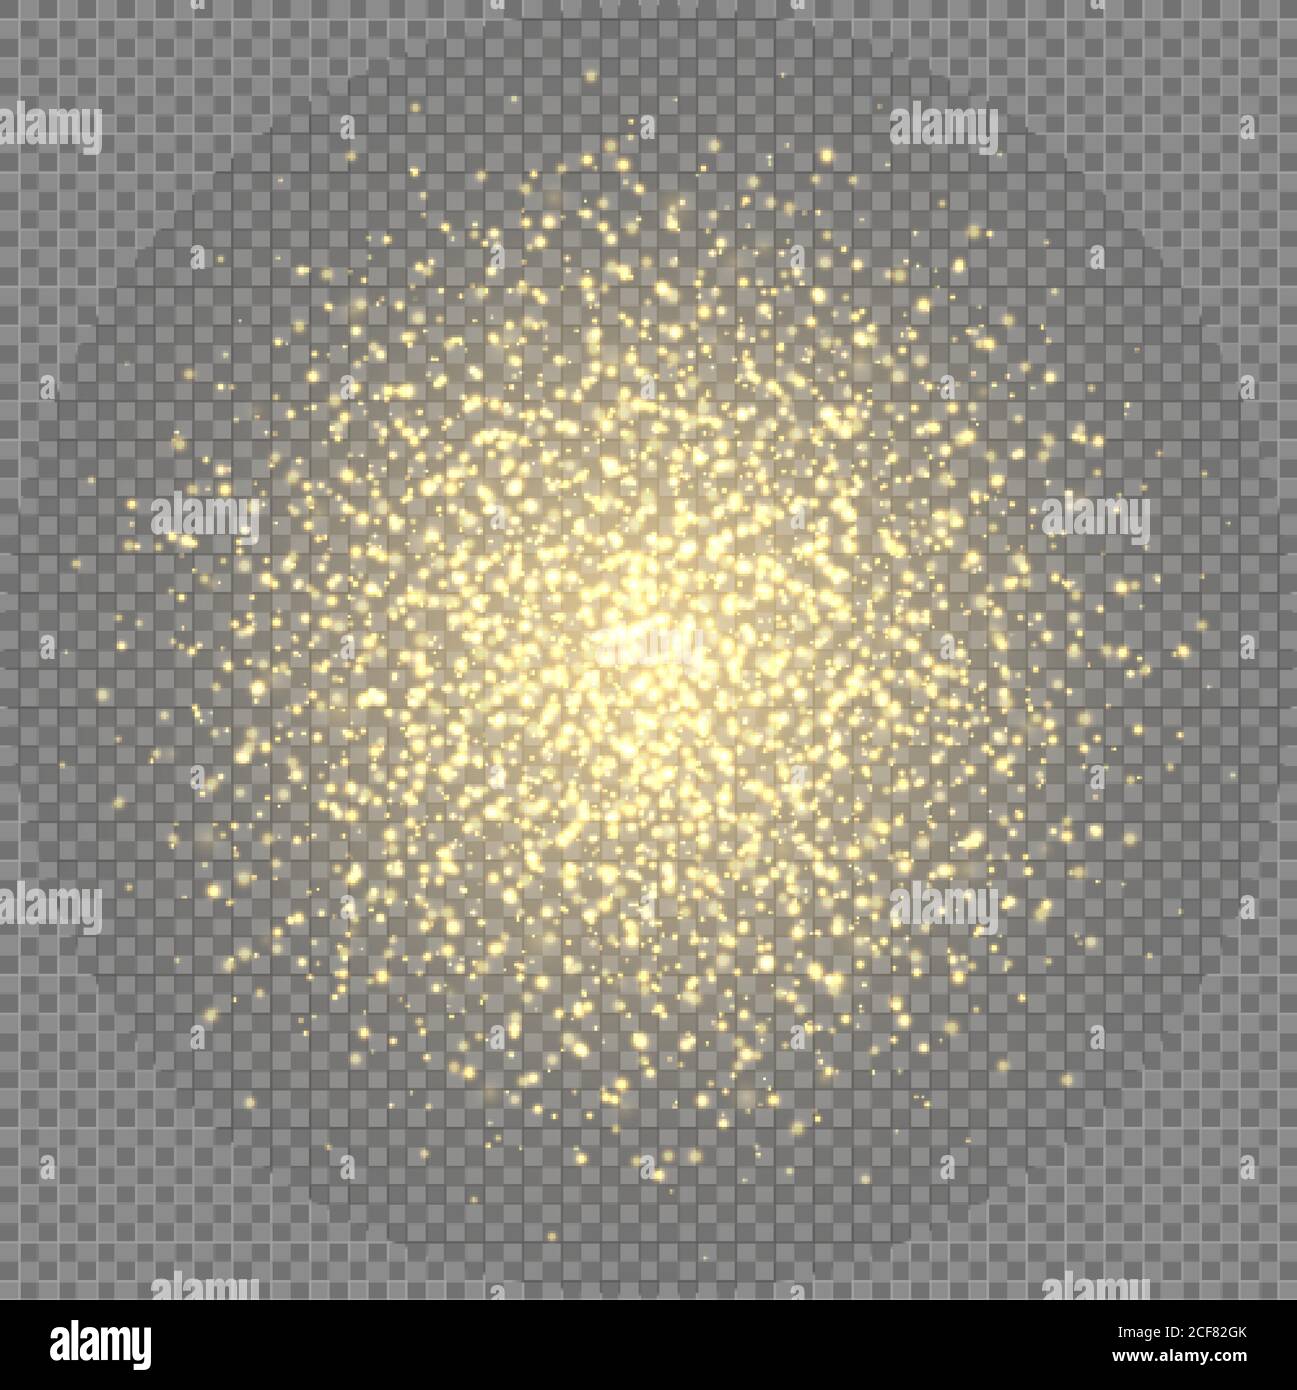 Goldene Funkeln, abstrakte leuchtende Teilchen, gelbe Sternstaubexplosion. Fliegende Weihnachtsgrare und Funken. Stock Vektor